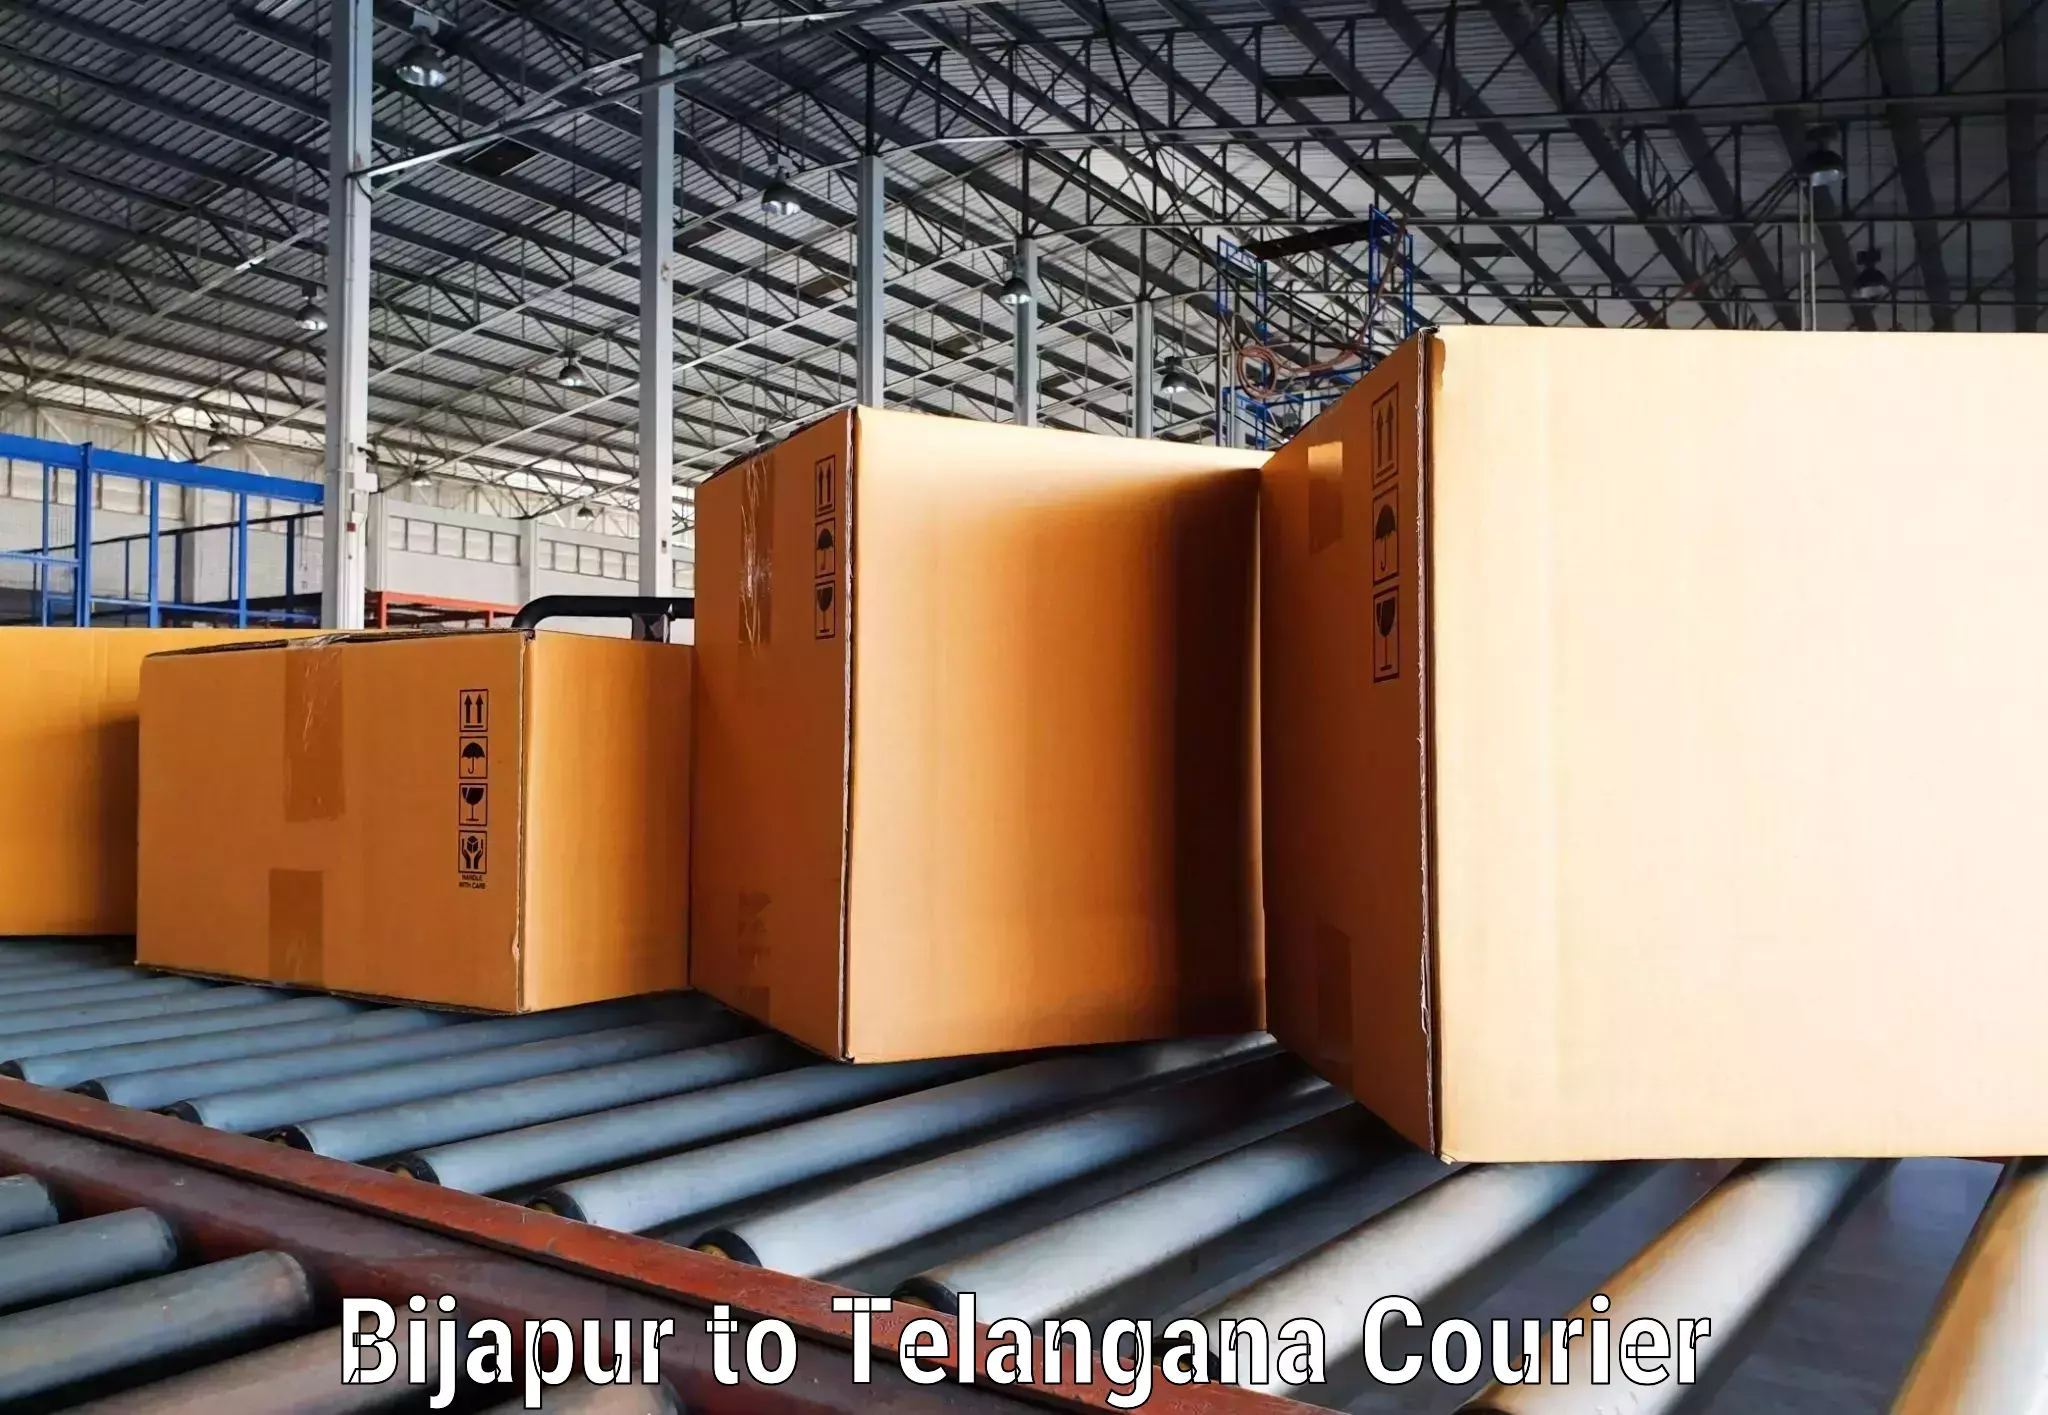 Urban courier service Bijapur to International Institute of Information Technology Hyderabad